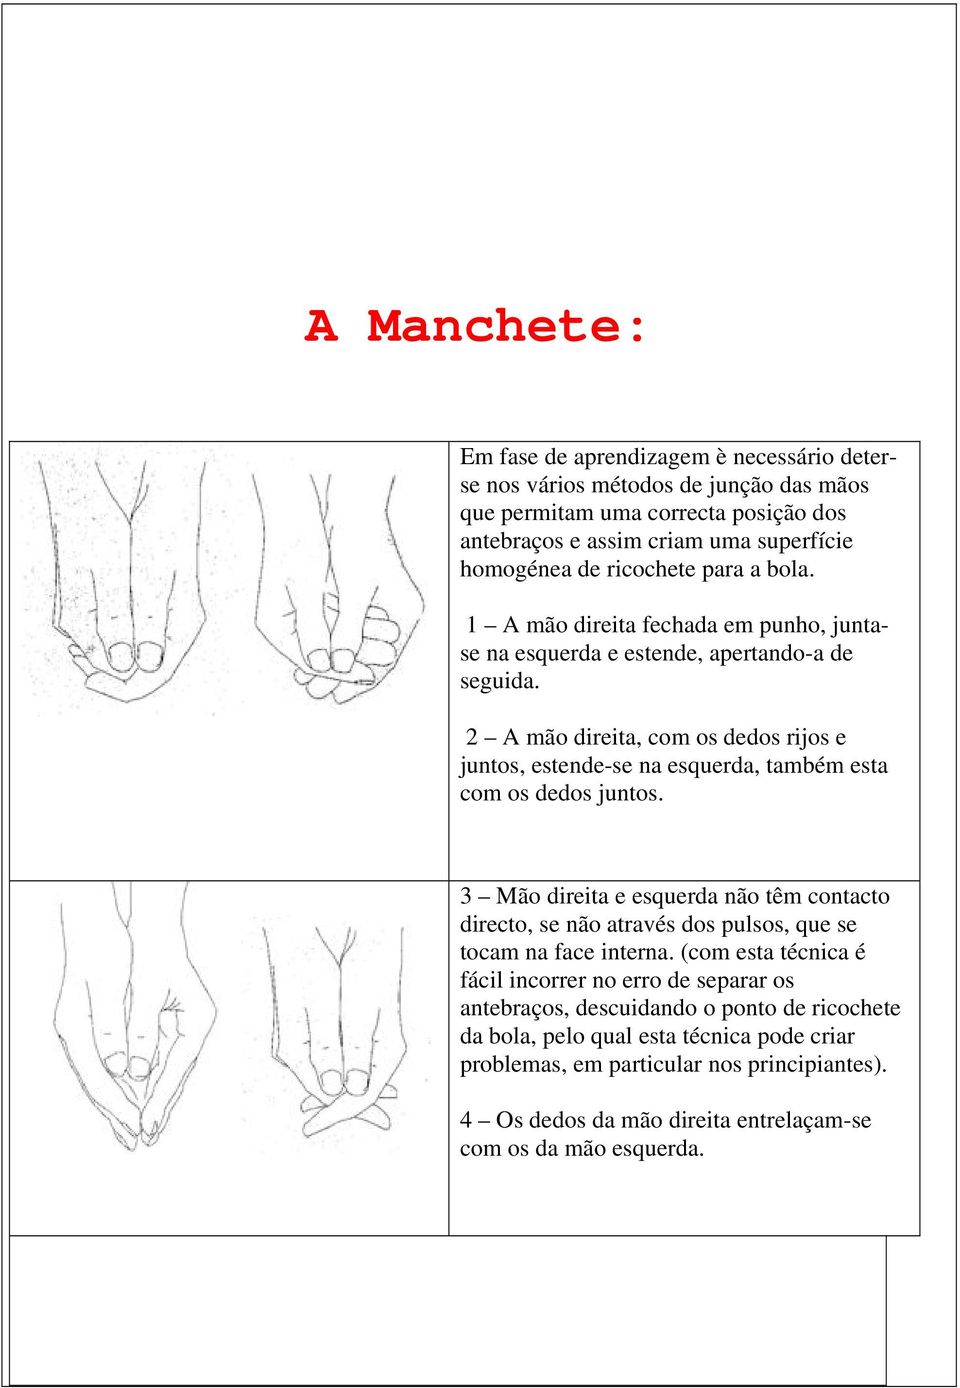 2 A mão direita, com os dedos rijos e juntos, estende-se na esquerda, também esta com os dedos juntos.